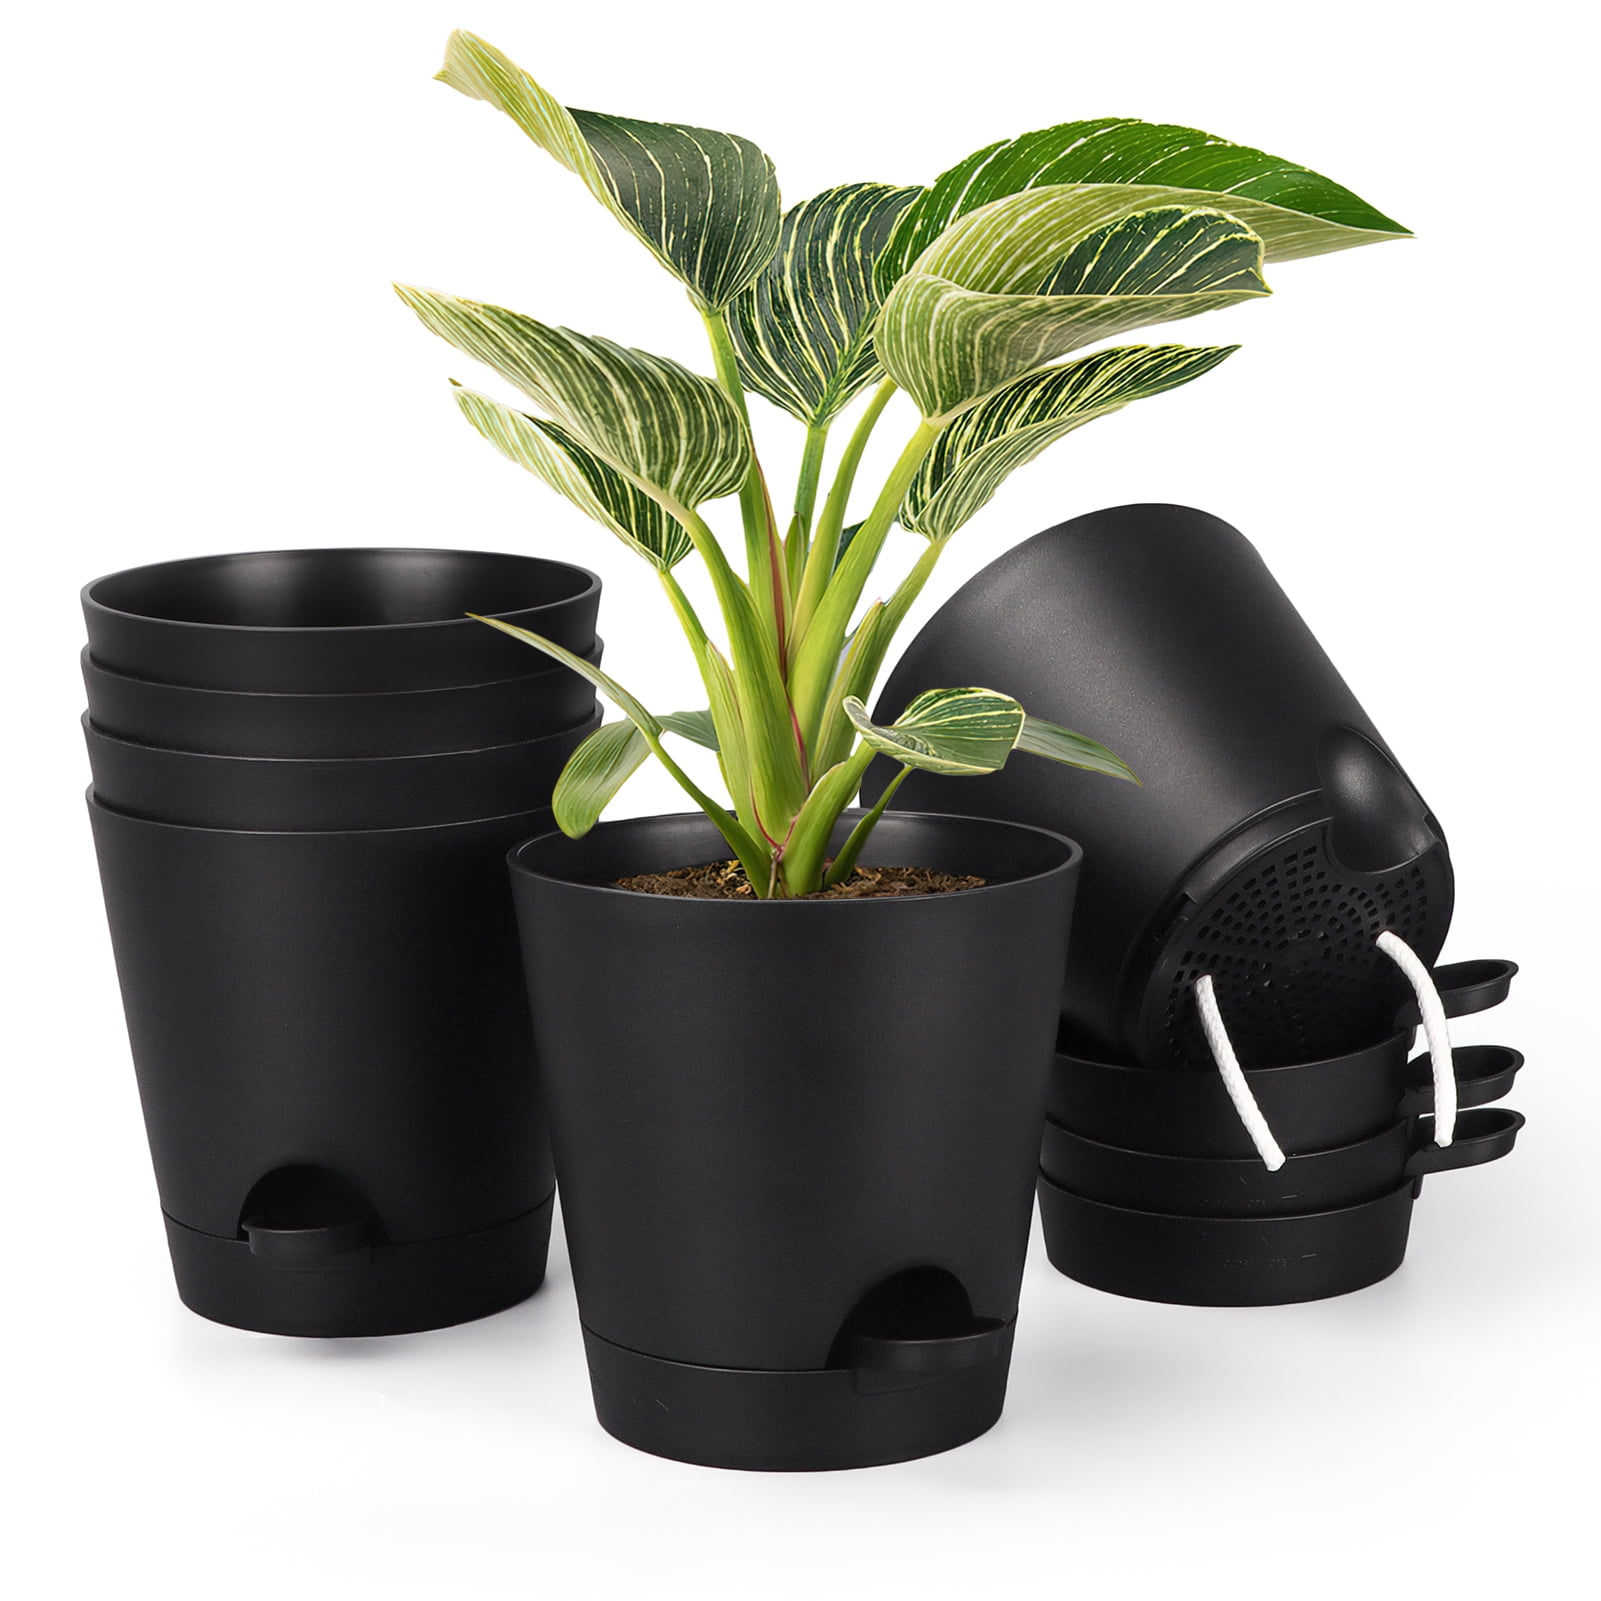 Set of 12 Indoor/Outdoor Self-watering flowerpot planter 6" diameter Black 